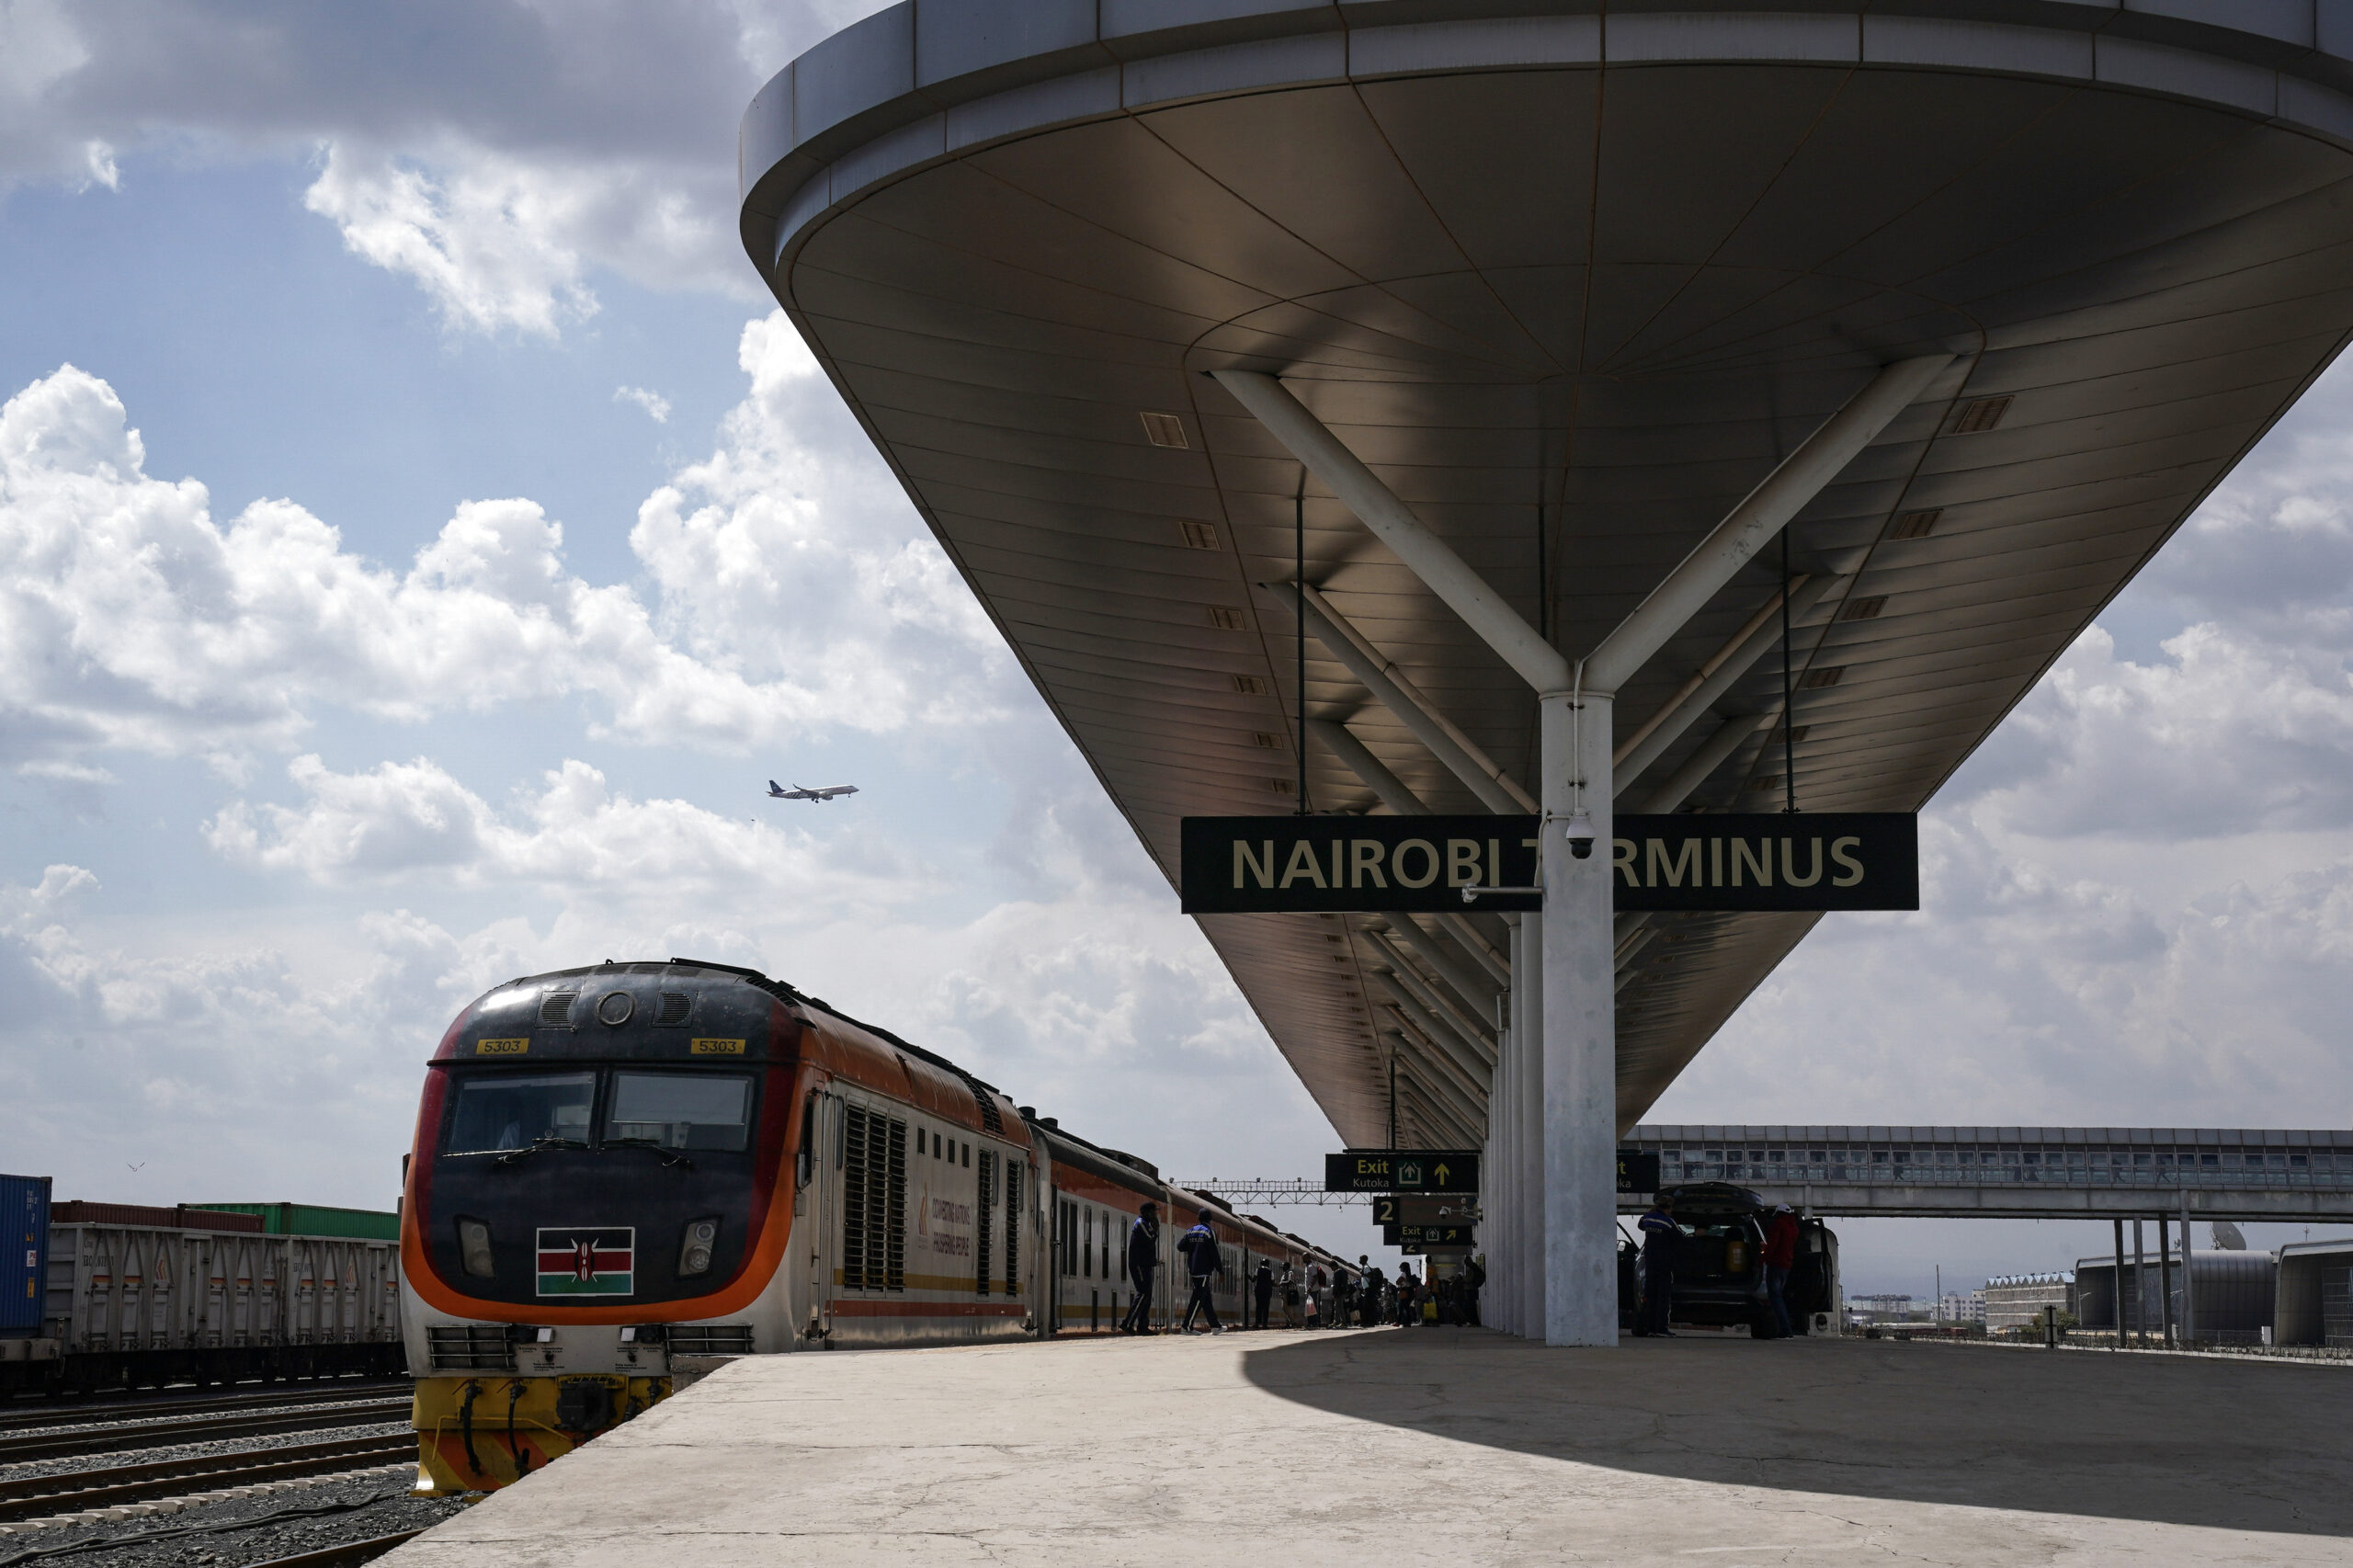 'ทางรถไฟ' ฝีมือจีนในเคนยา ย่นเวลาเดินทาง 5 ชั่วโมง